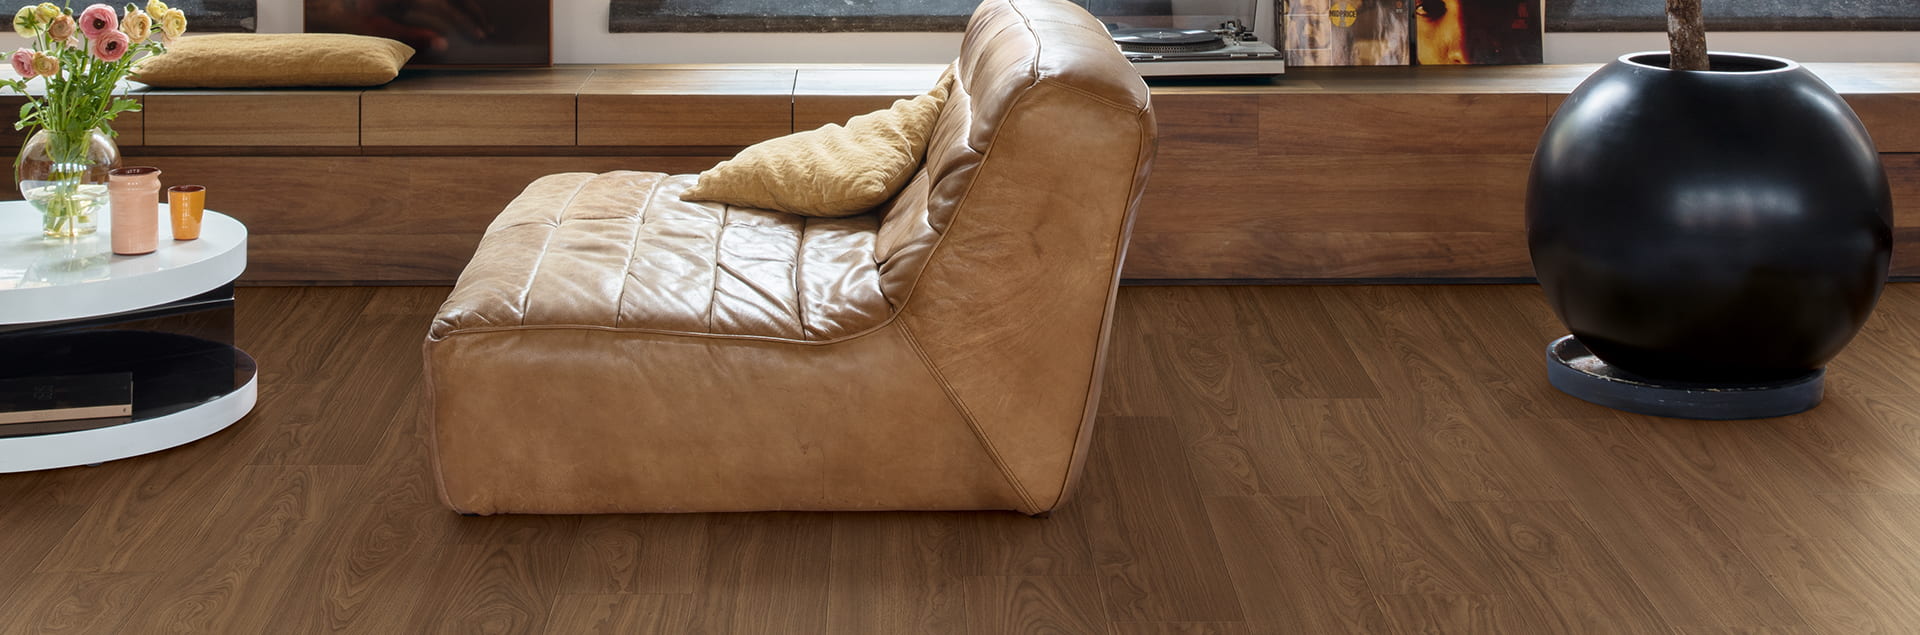 Laminate walnut flooring in living room